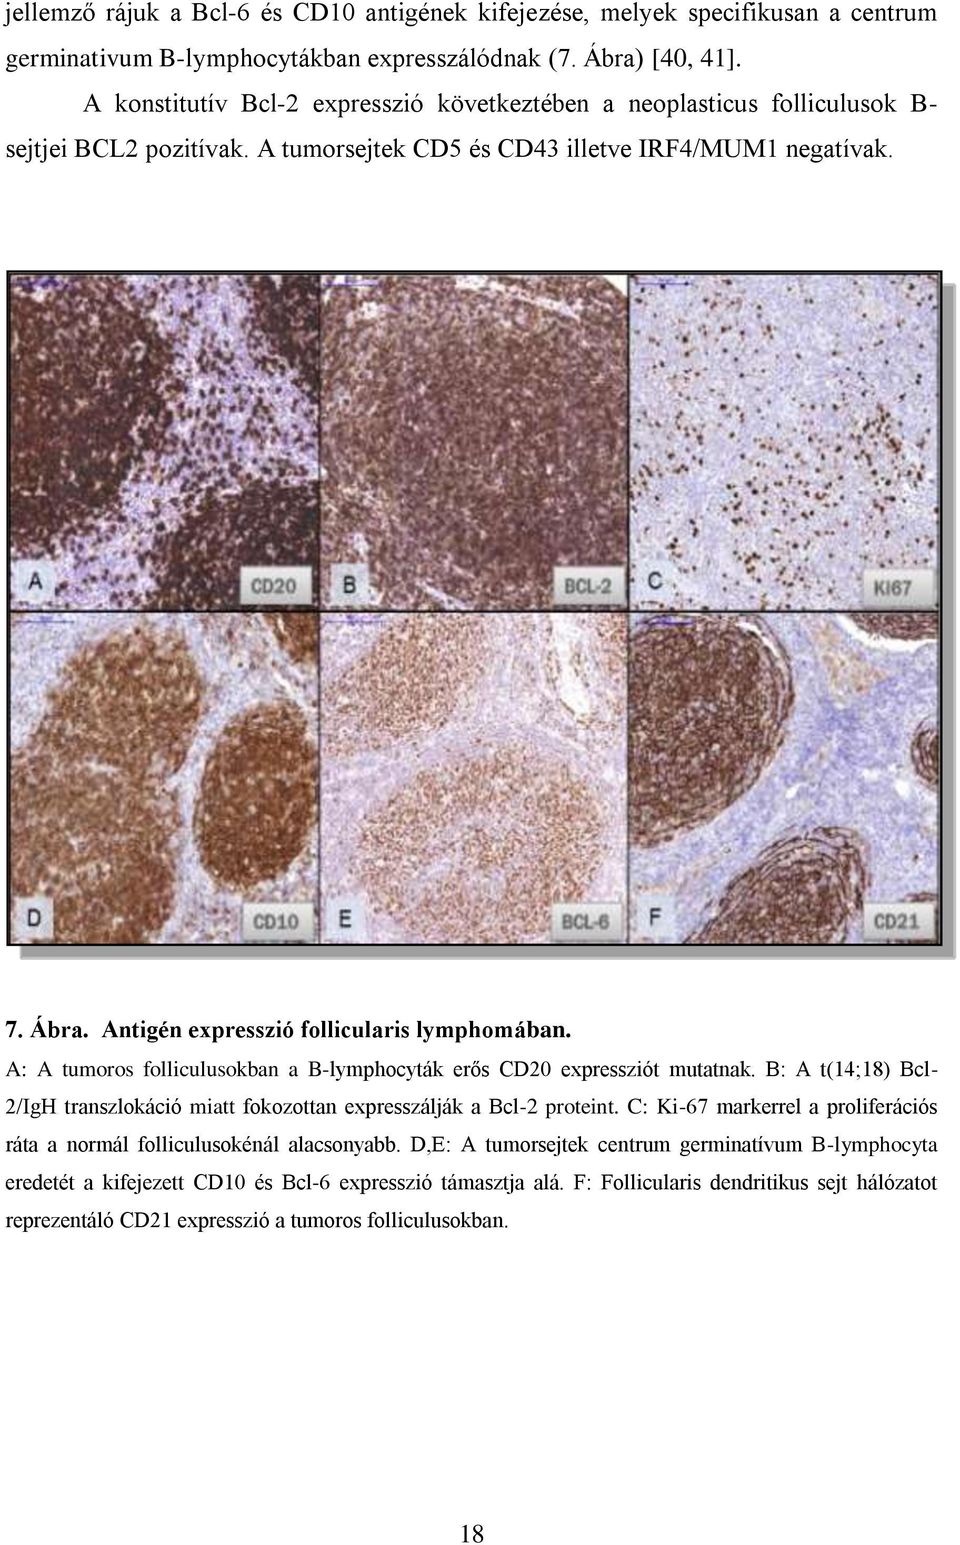 Antigén expresszió follicularis lymphomában. A: A tumoros folliculusokban a B-lymphocyták erős CD20 expressziót mutatnak.